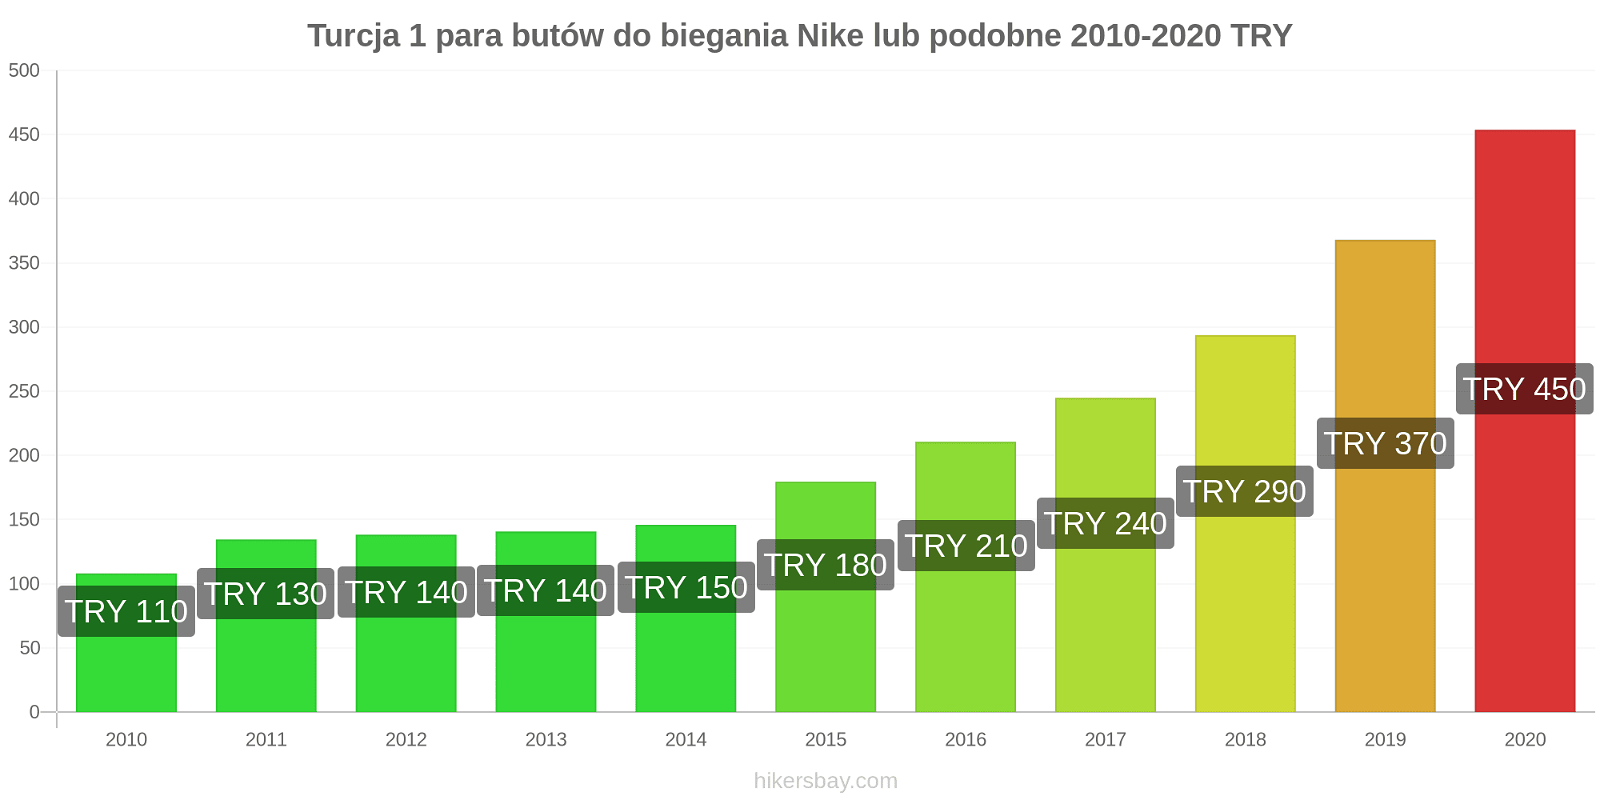 Turcja zmiany cen 1 para butów do biegania Nike lub podobne hikersbay.com